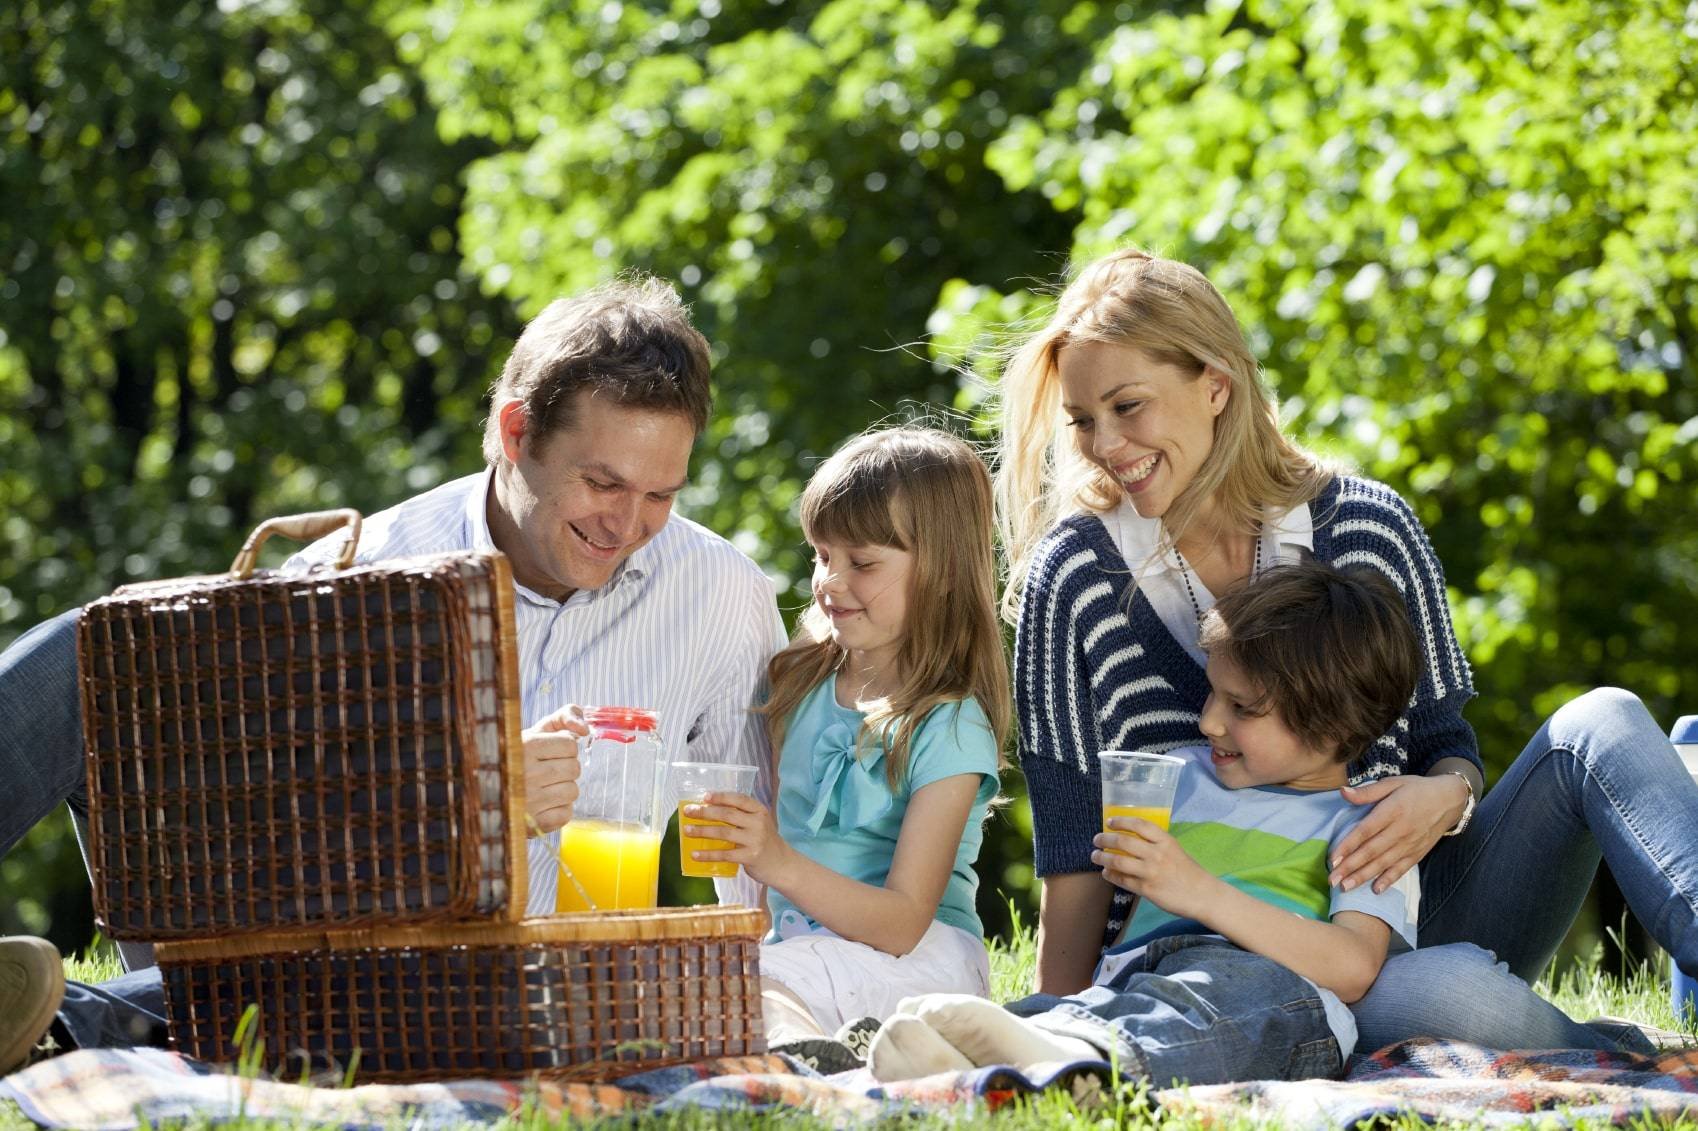 Описание пикника. Пикник на природе. Семья на пикнике. Пикник с семьей на природе. Родители с детьми на природе.